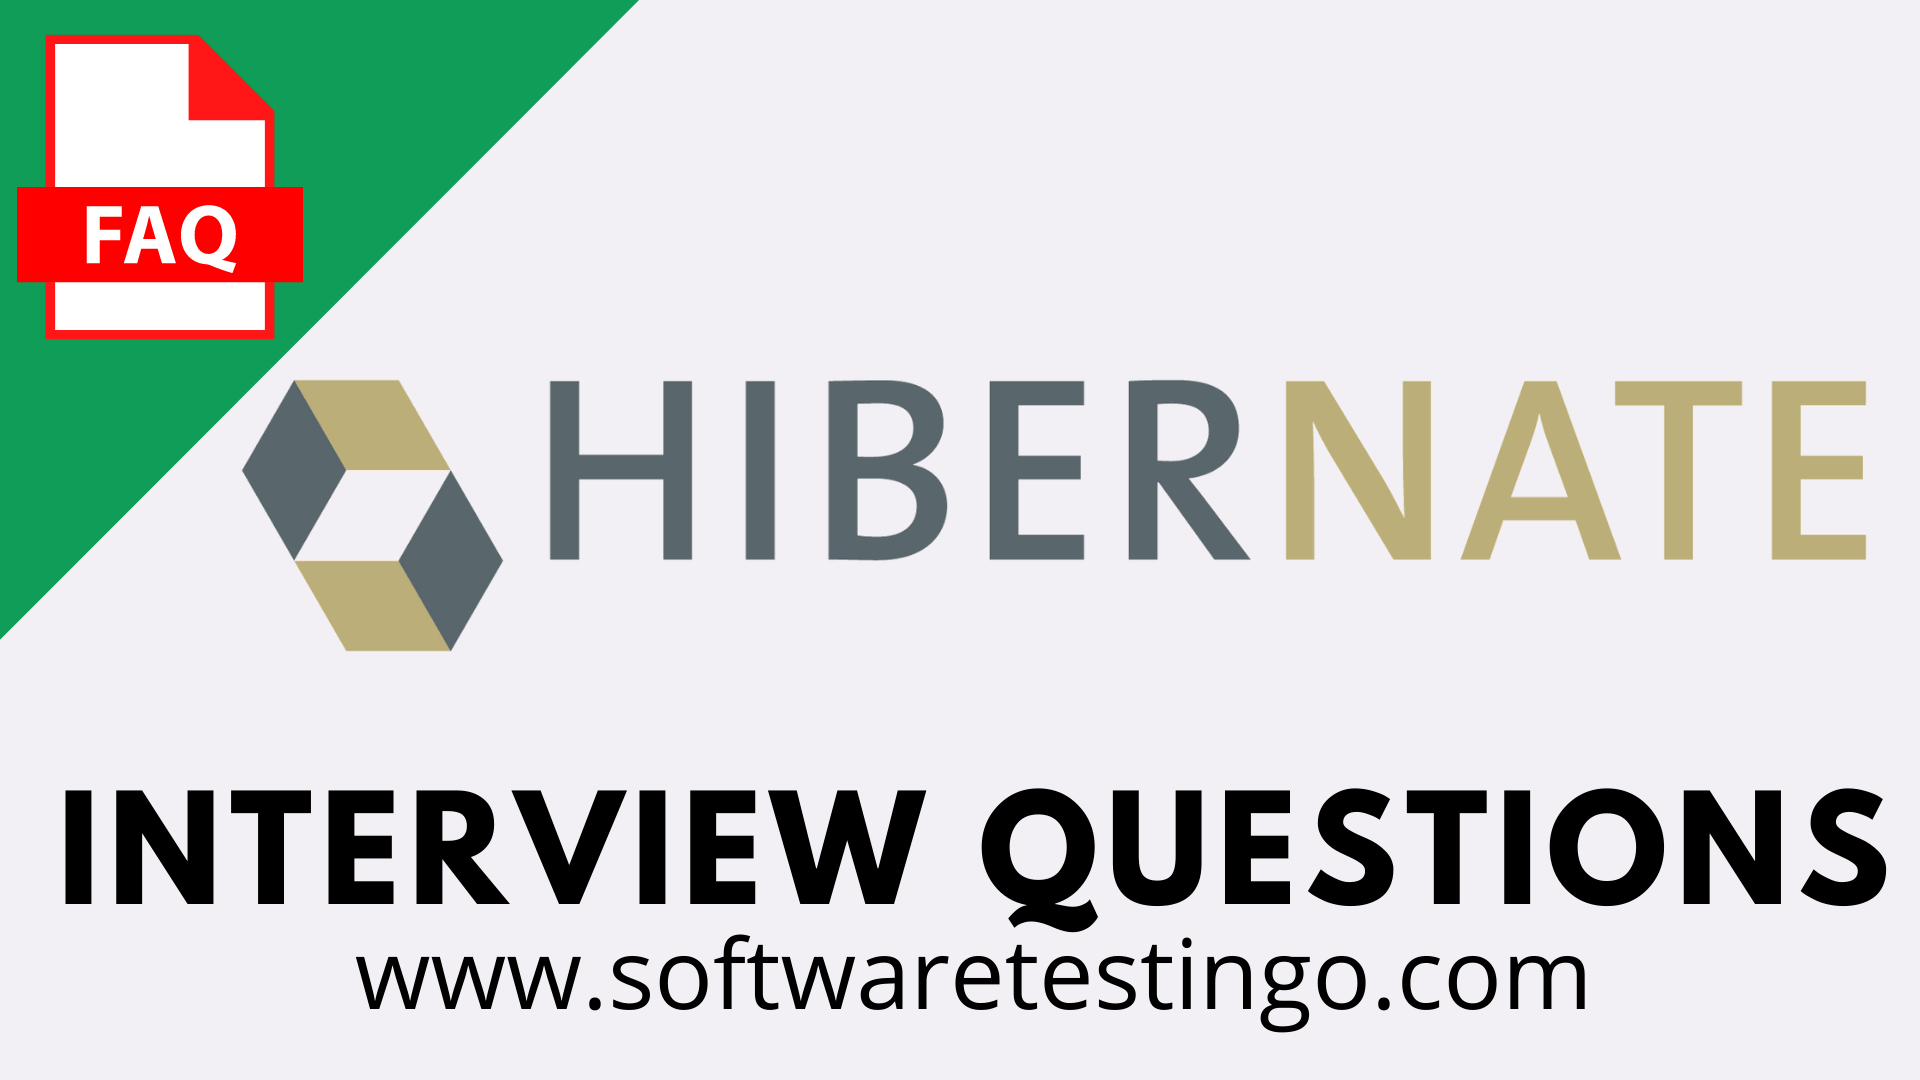 Hibernate Interview Questions